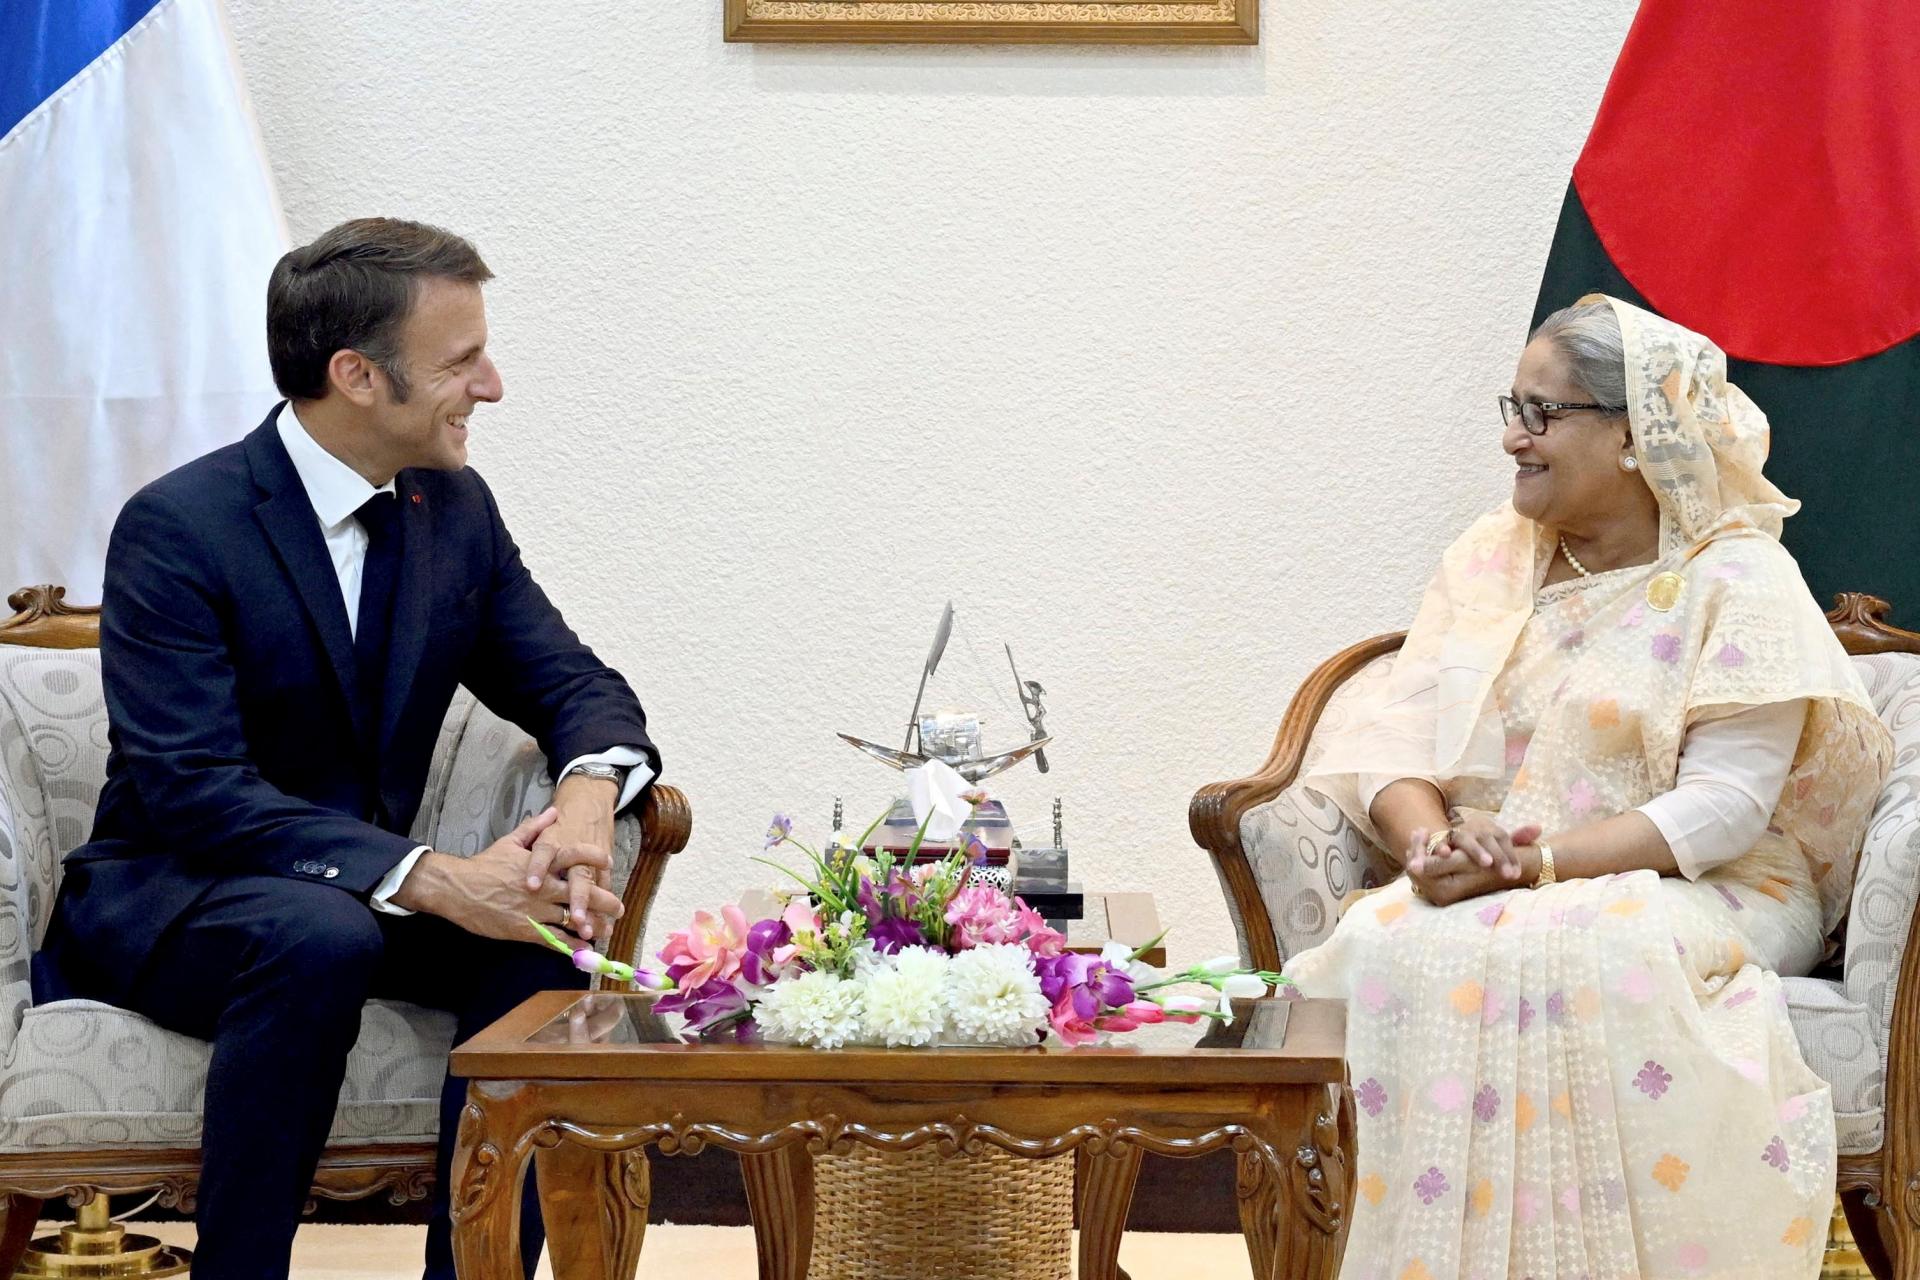 La France aidera le Bangladesh avec des prêts pour des infrastructures et des satellites, a déclaré Macron